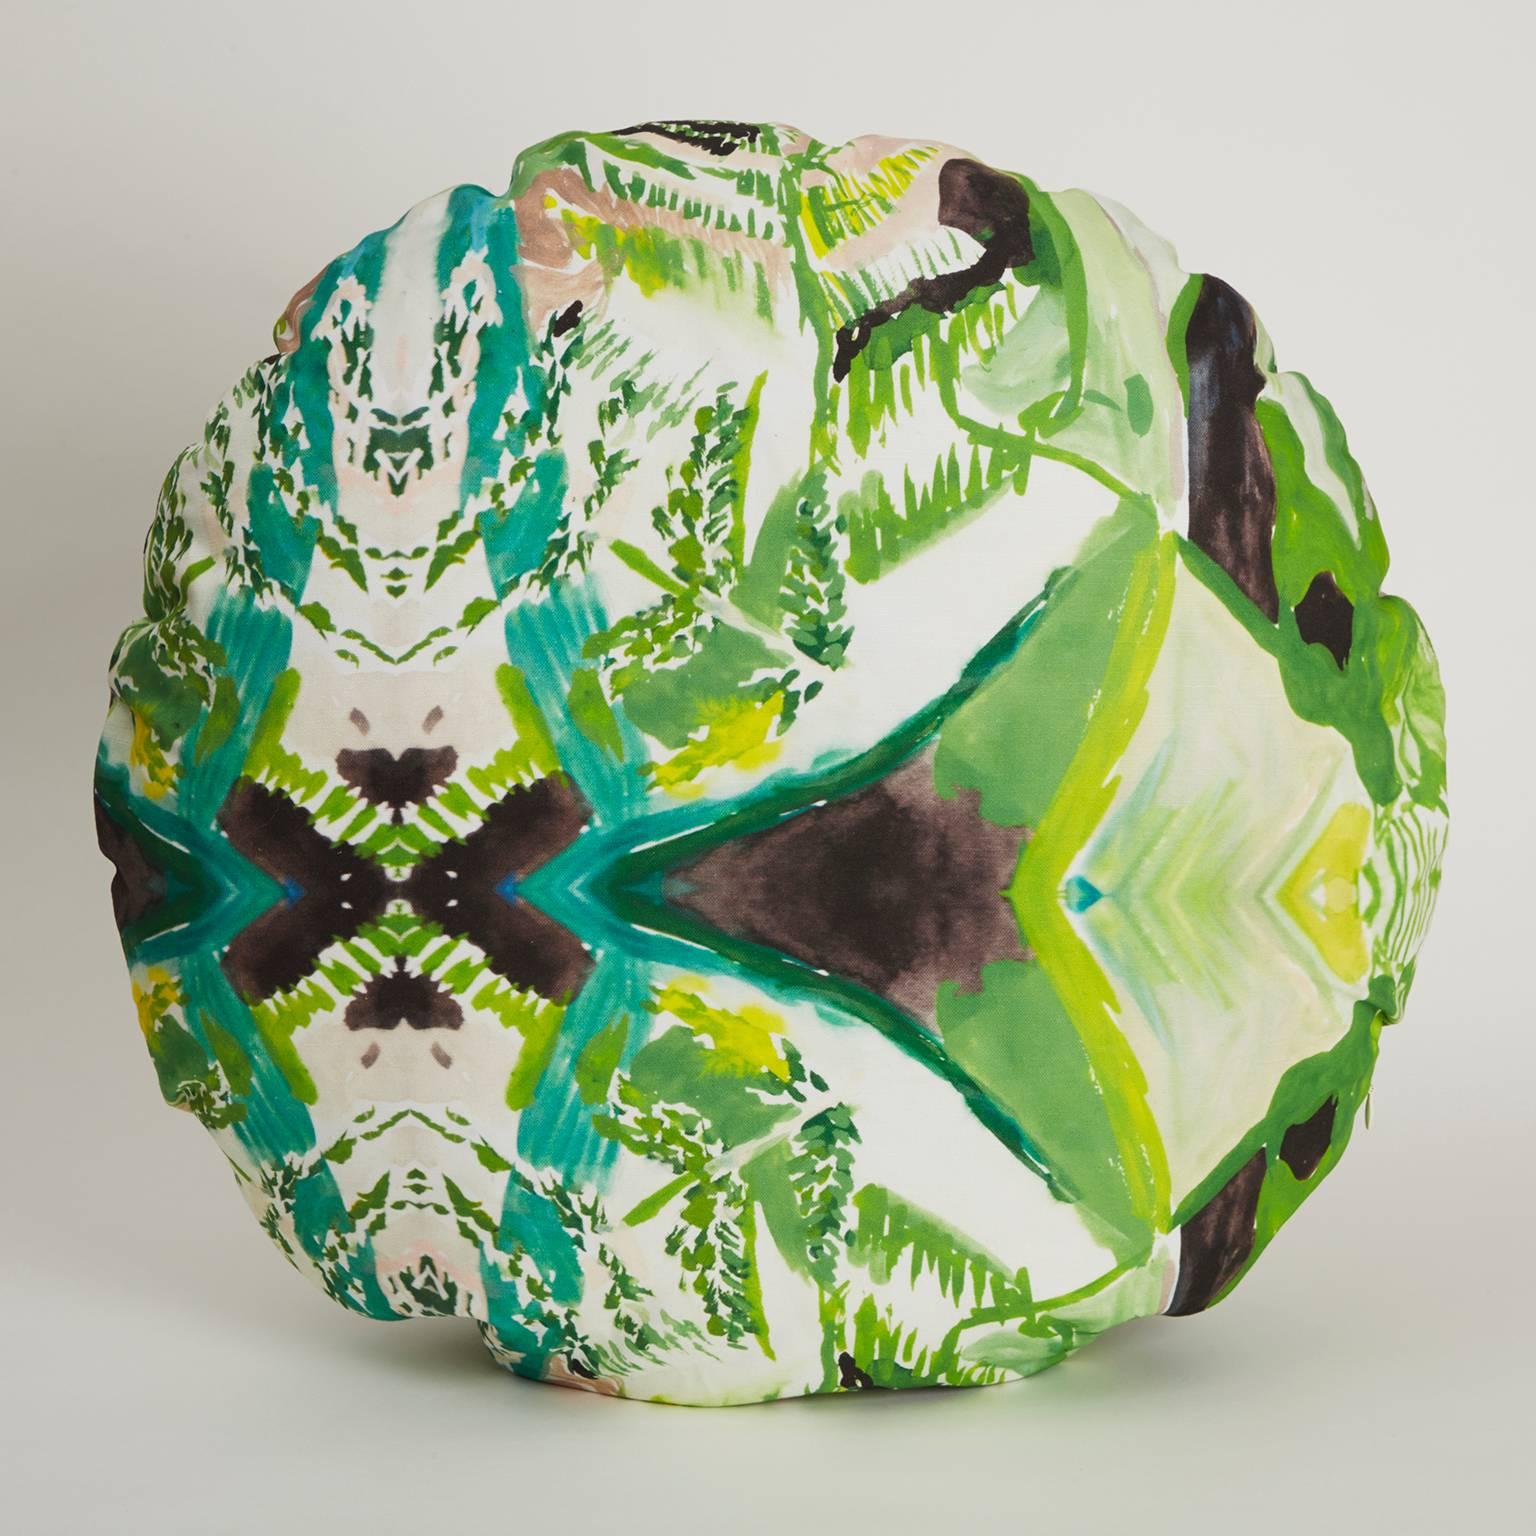 Das Circle Fern Pillow ist mit einem Original-Aquarellgemälde von Naomi Clark digital bedruckt. Jedes Stück aus Clarks abstrakter und farbenprächtiger Print-Kollektion für Fort Makers bringt Schönheit, Kunst und Komfort in Ihr Zuhause.

MATERIAL: